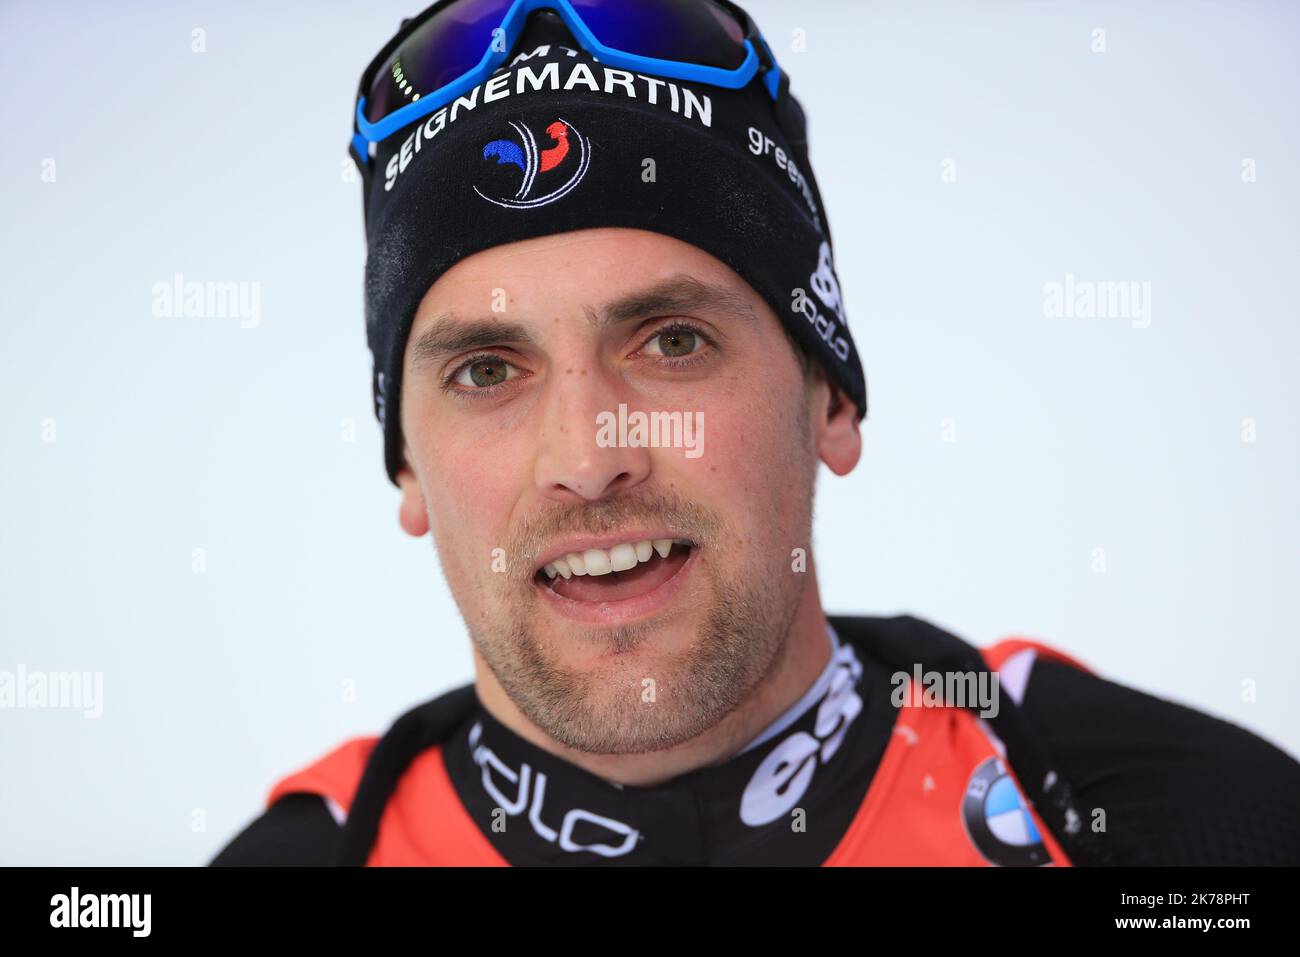 Simon Desthieux (FRA) lors de la coupe du monde de biathlon IBU 2019 Hochfilzen le vendredi 13 décembre 2019. Banque D'Images